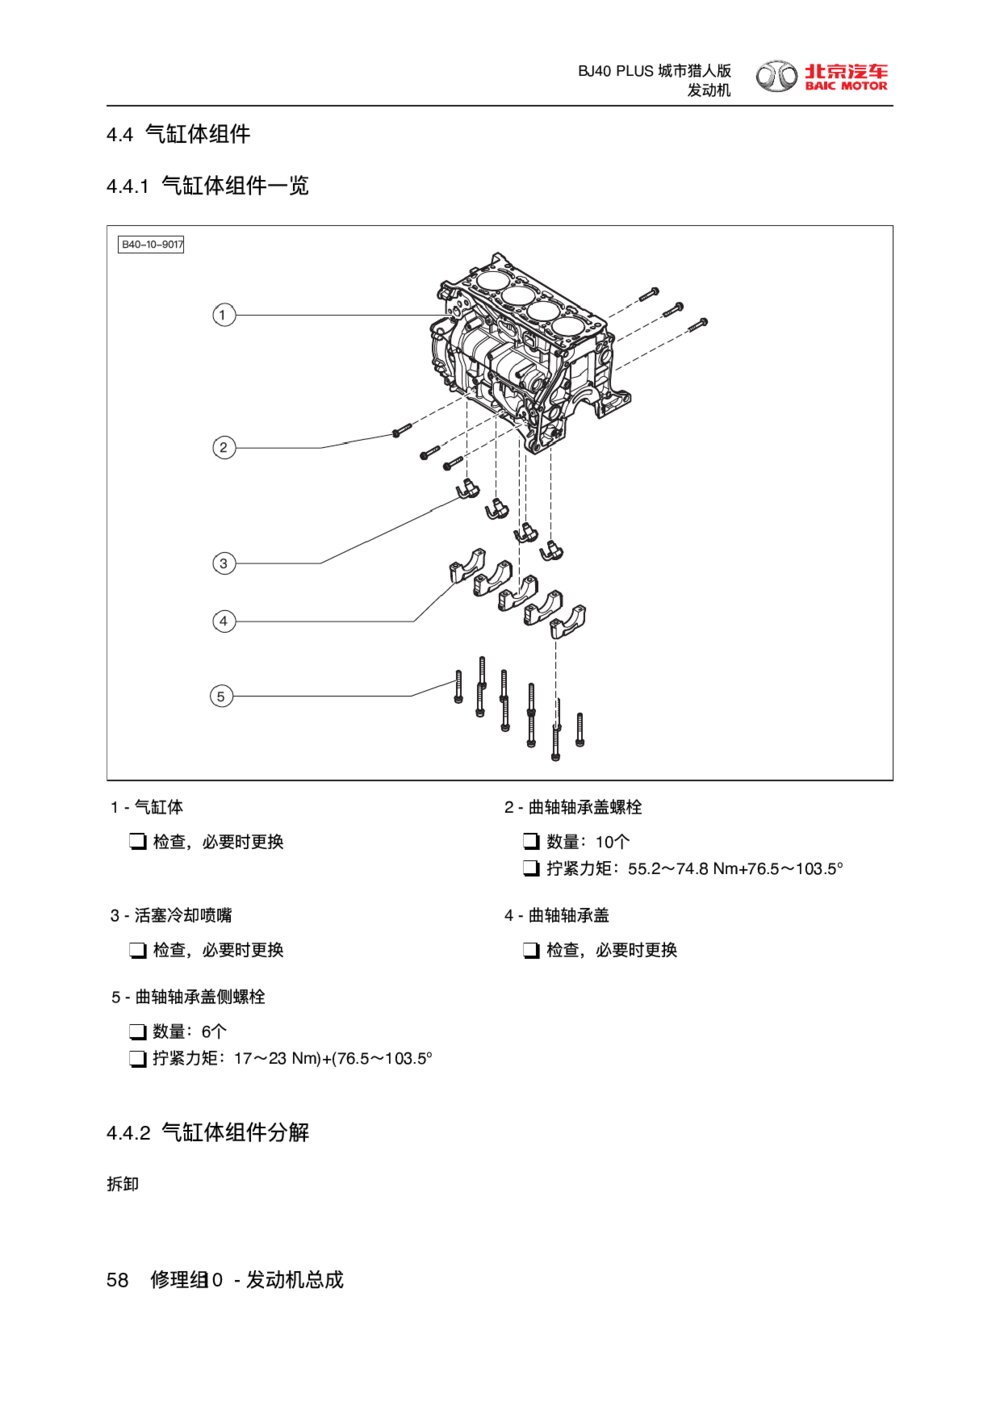 2018款北京BJ40 PLUS发动机气缸体组件1